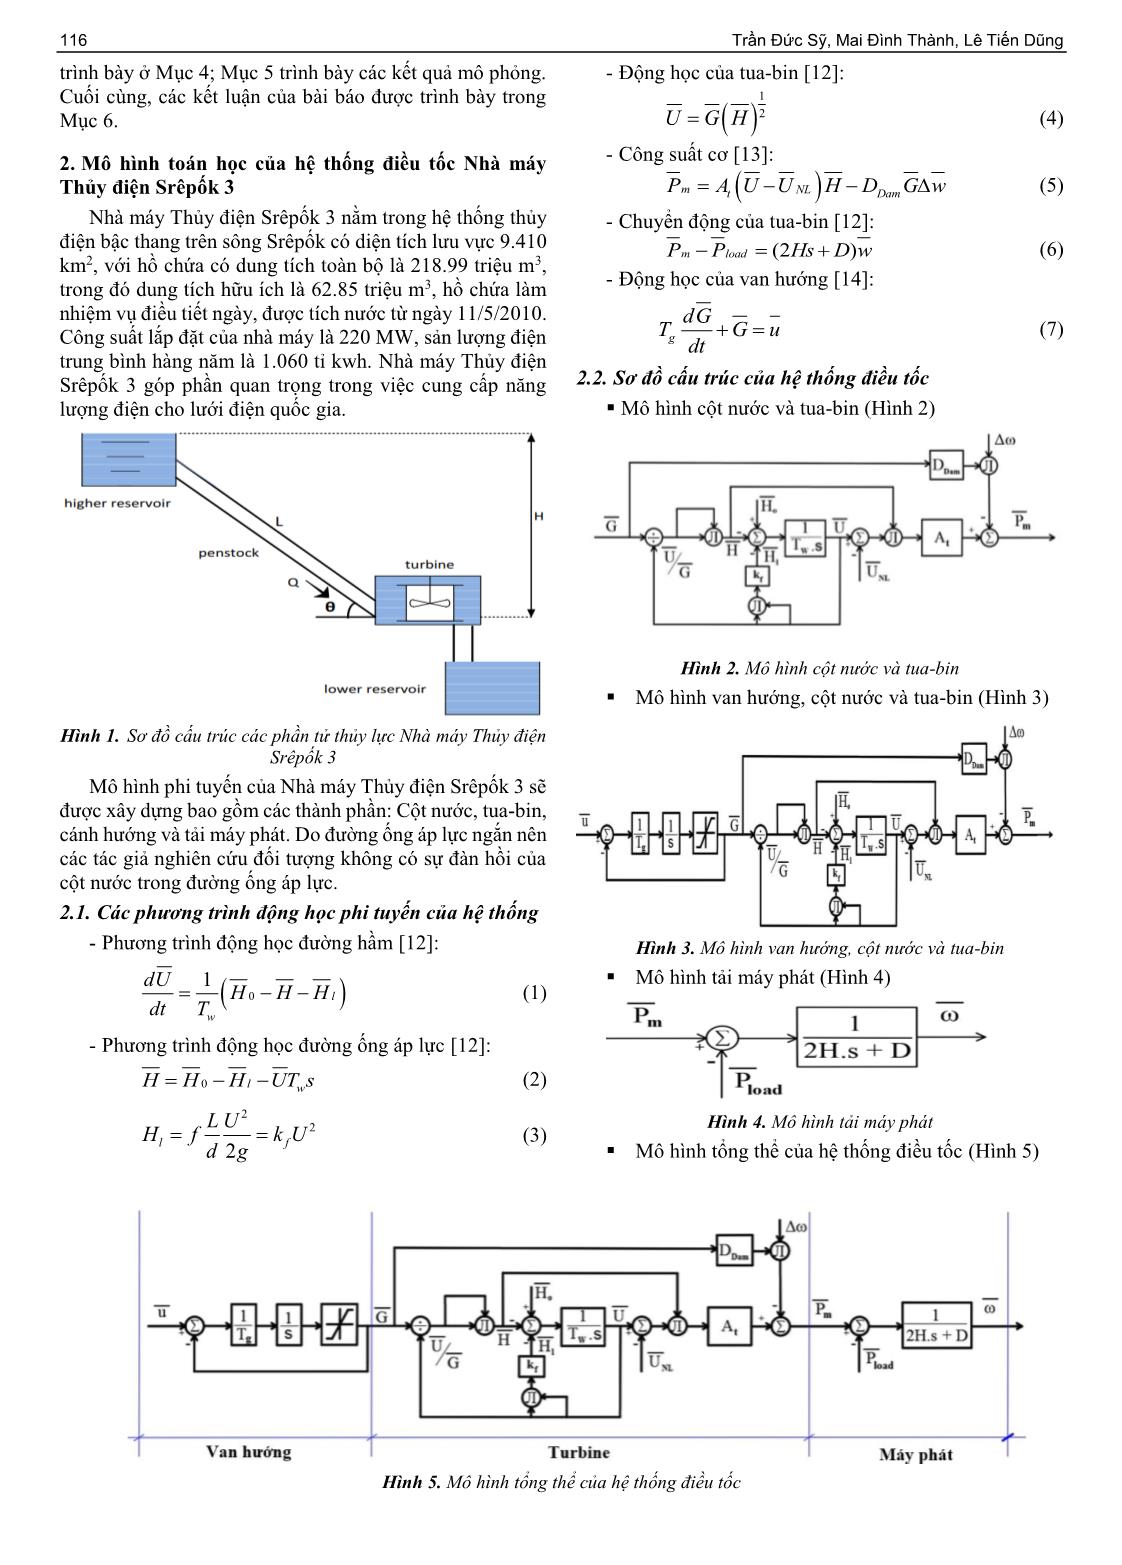 Đề xuất cải tiến thuật toán điều khiển hệ thống điều tốc nhà máy thủy điện Srêpốk 3 ứng dụng logic mờ trang 2